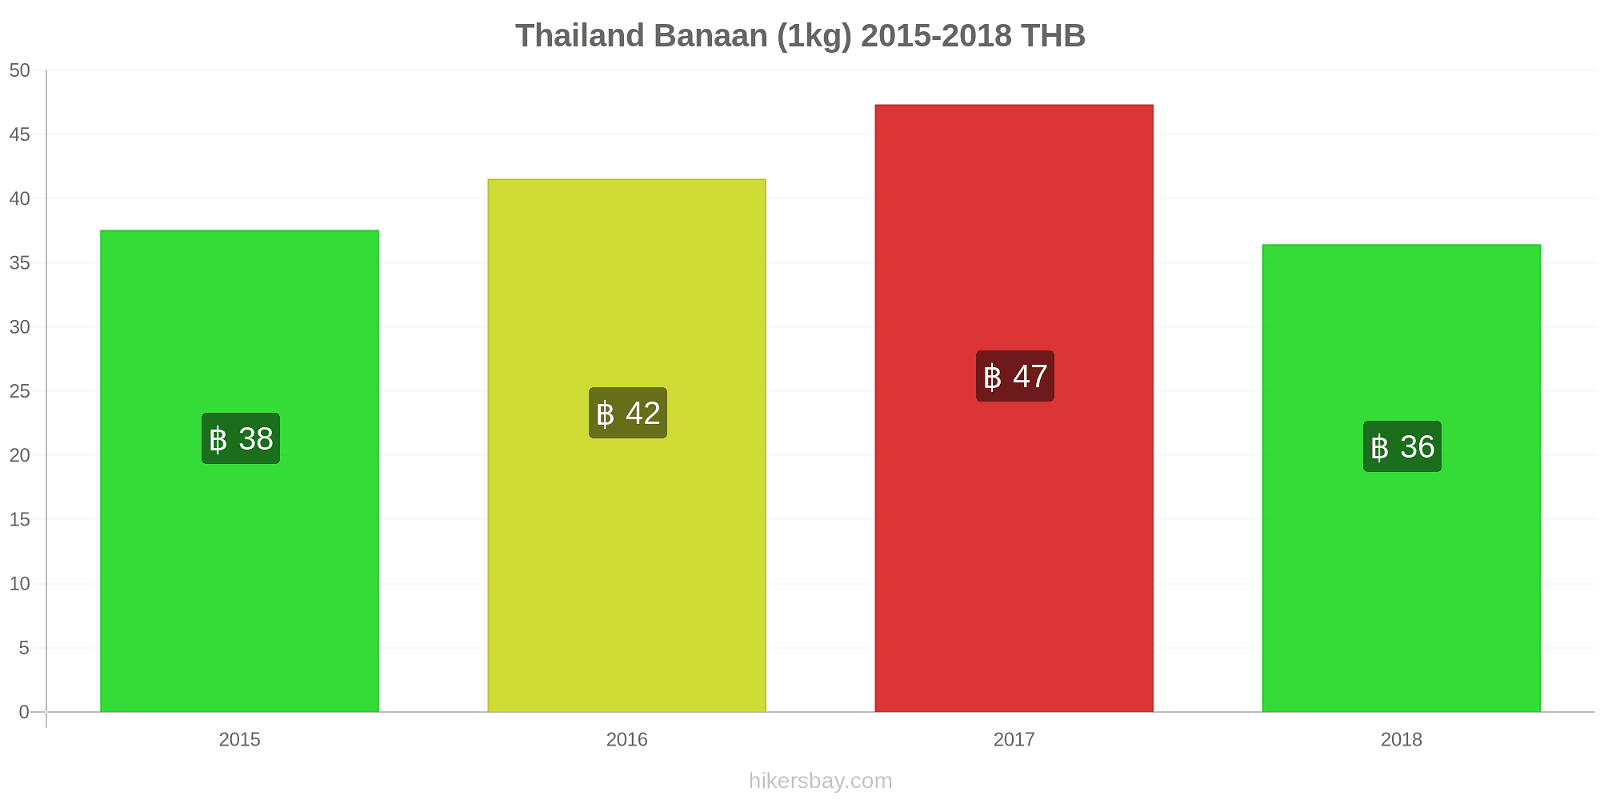 Thailand prijswijzigingen Bananen (1kg) hikersbay.com